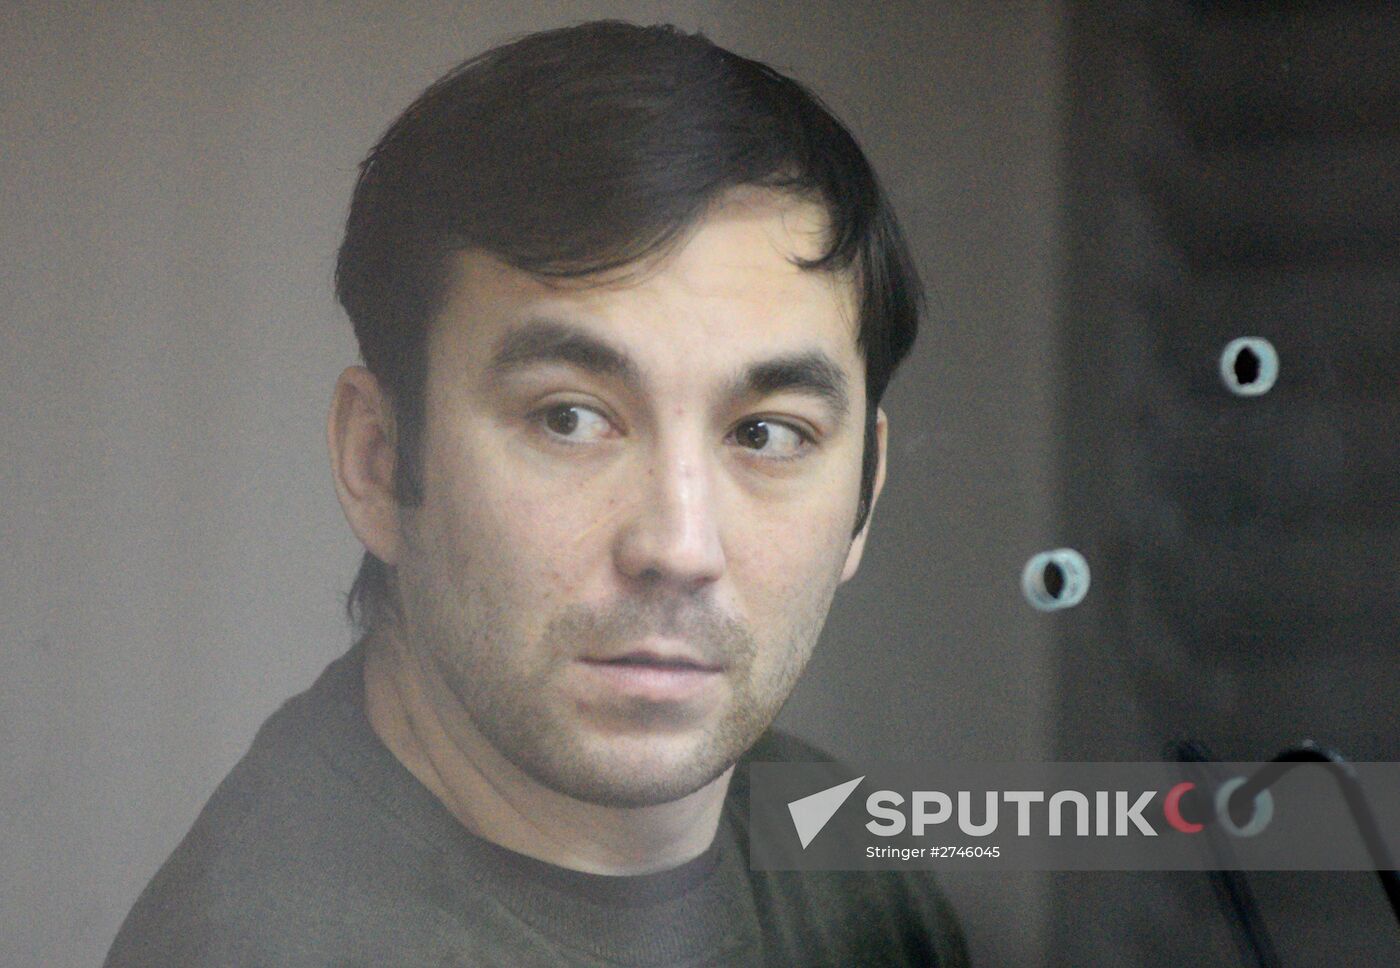 Kiev court hears case of Yevgeny Yerofeyev and Alexander Aleksandrov